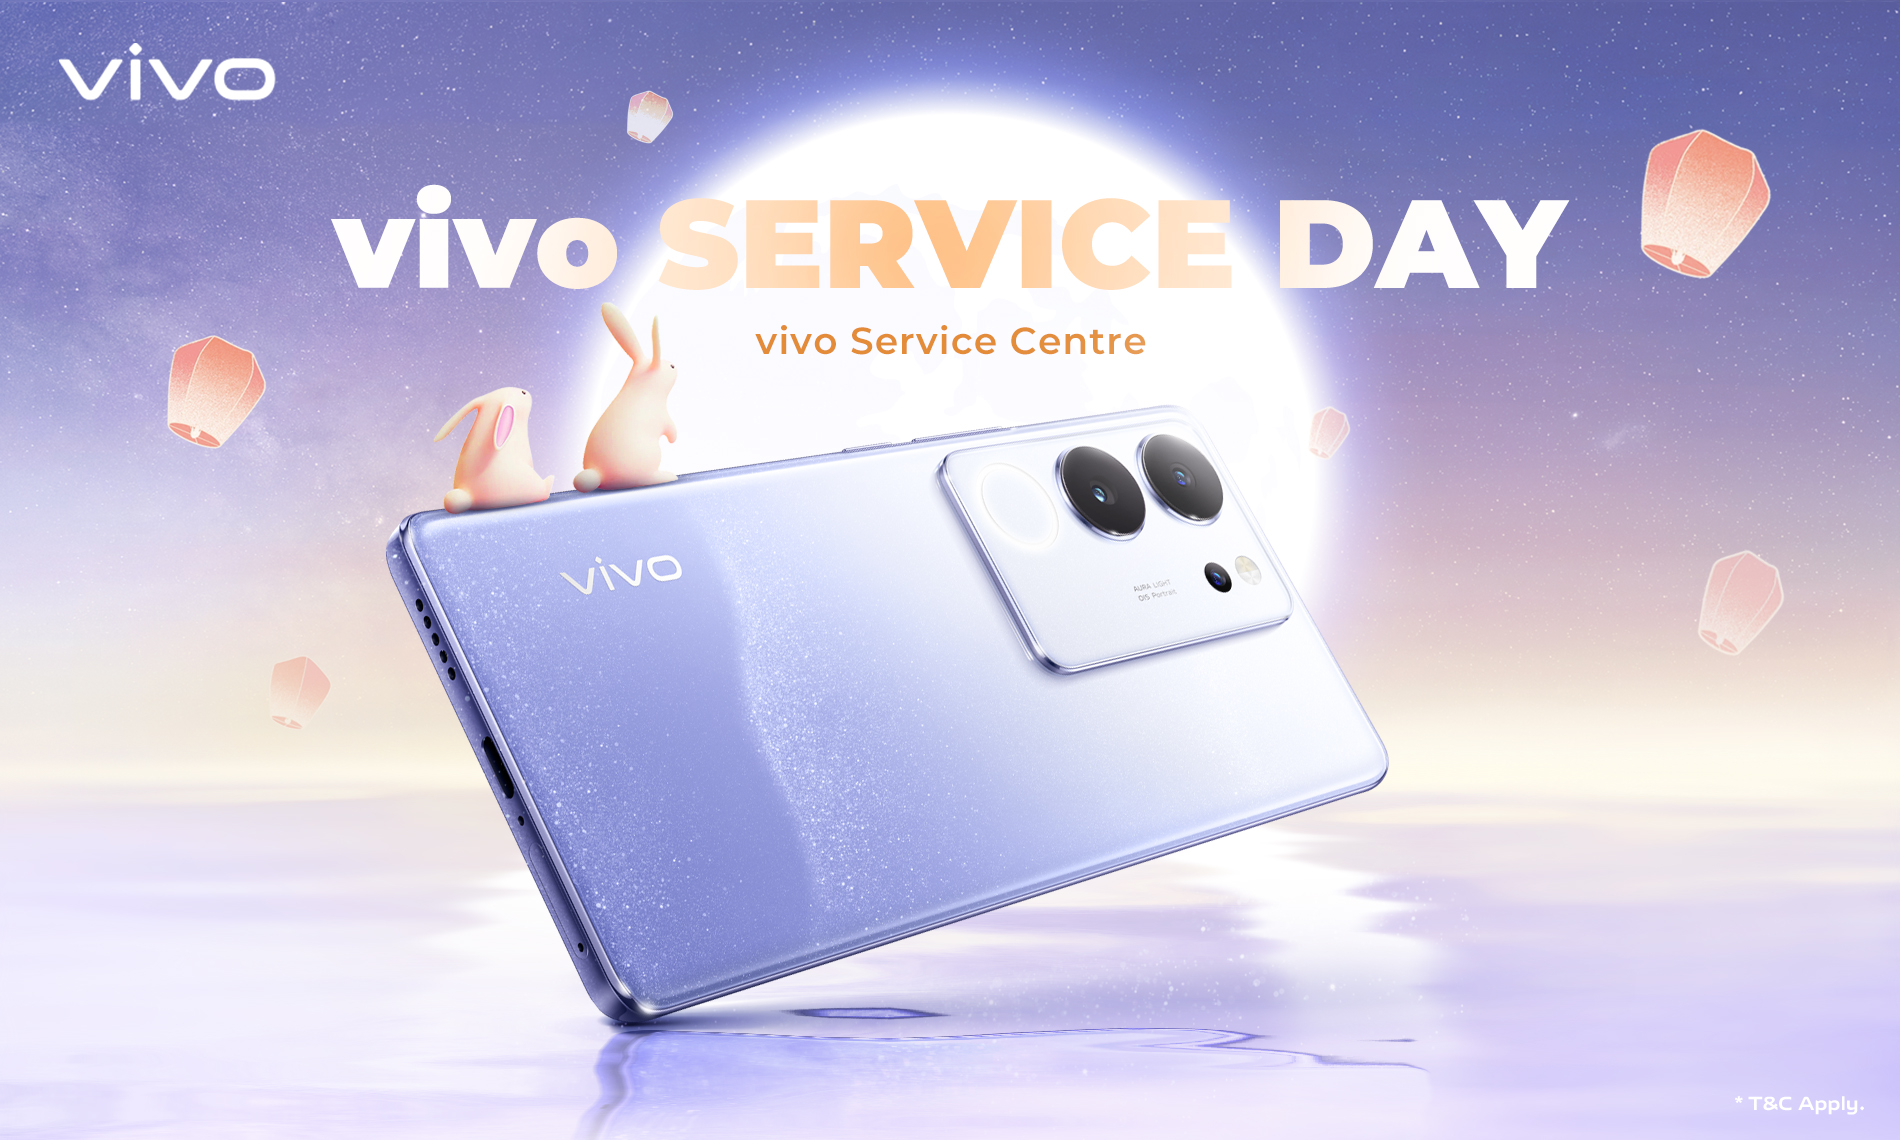 vivo Service Day in September